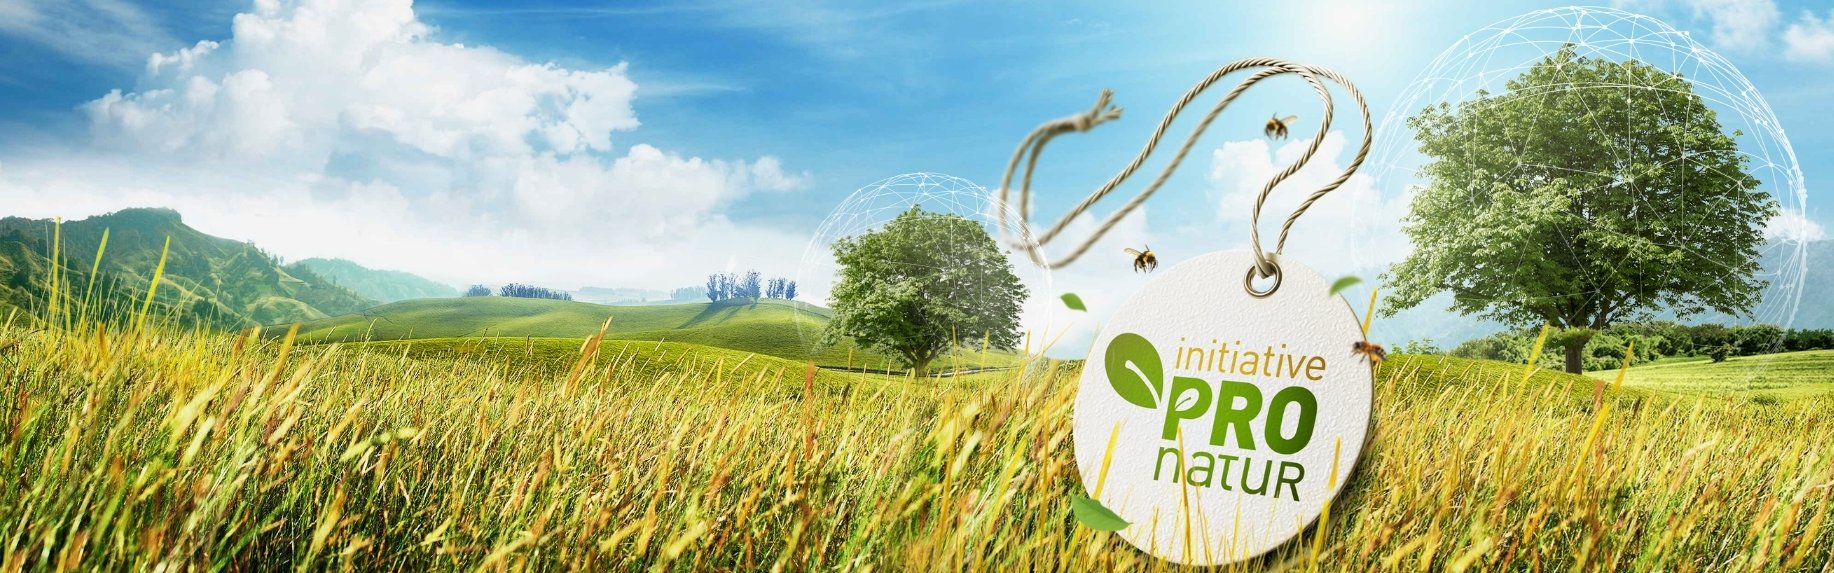 Symbolbild für die Initiative ProNatur, zu sehen ist das Logo vor einer schönen, grünen Landschaft.